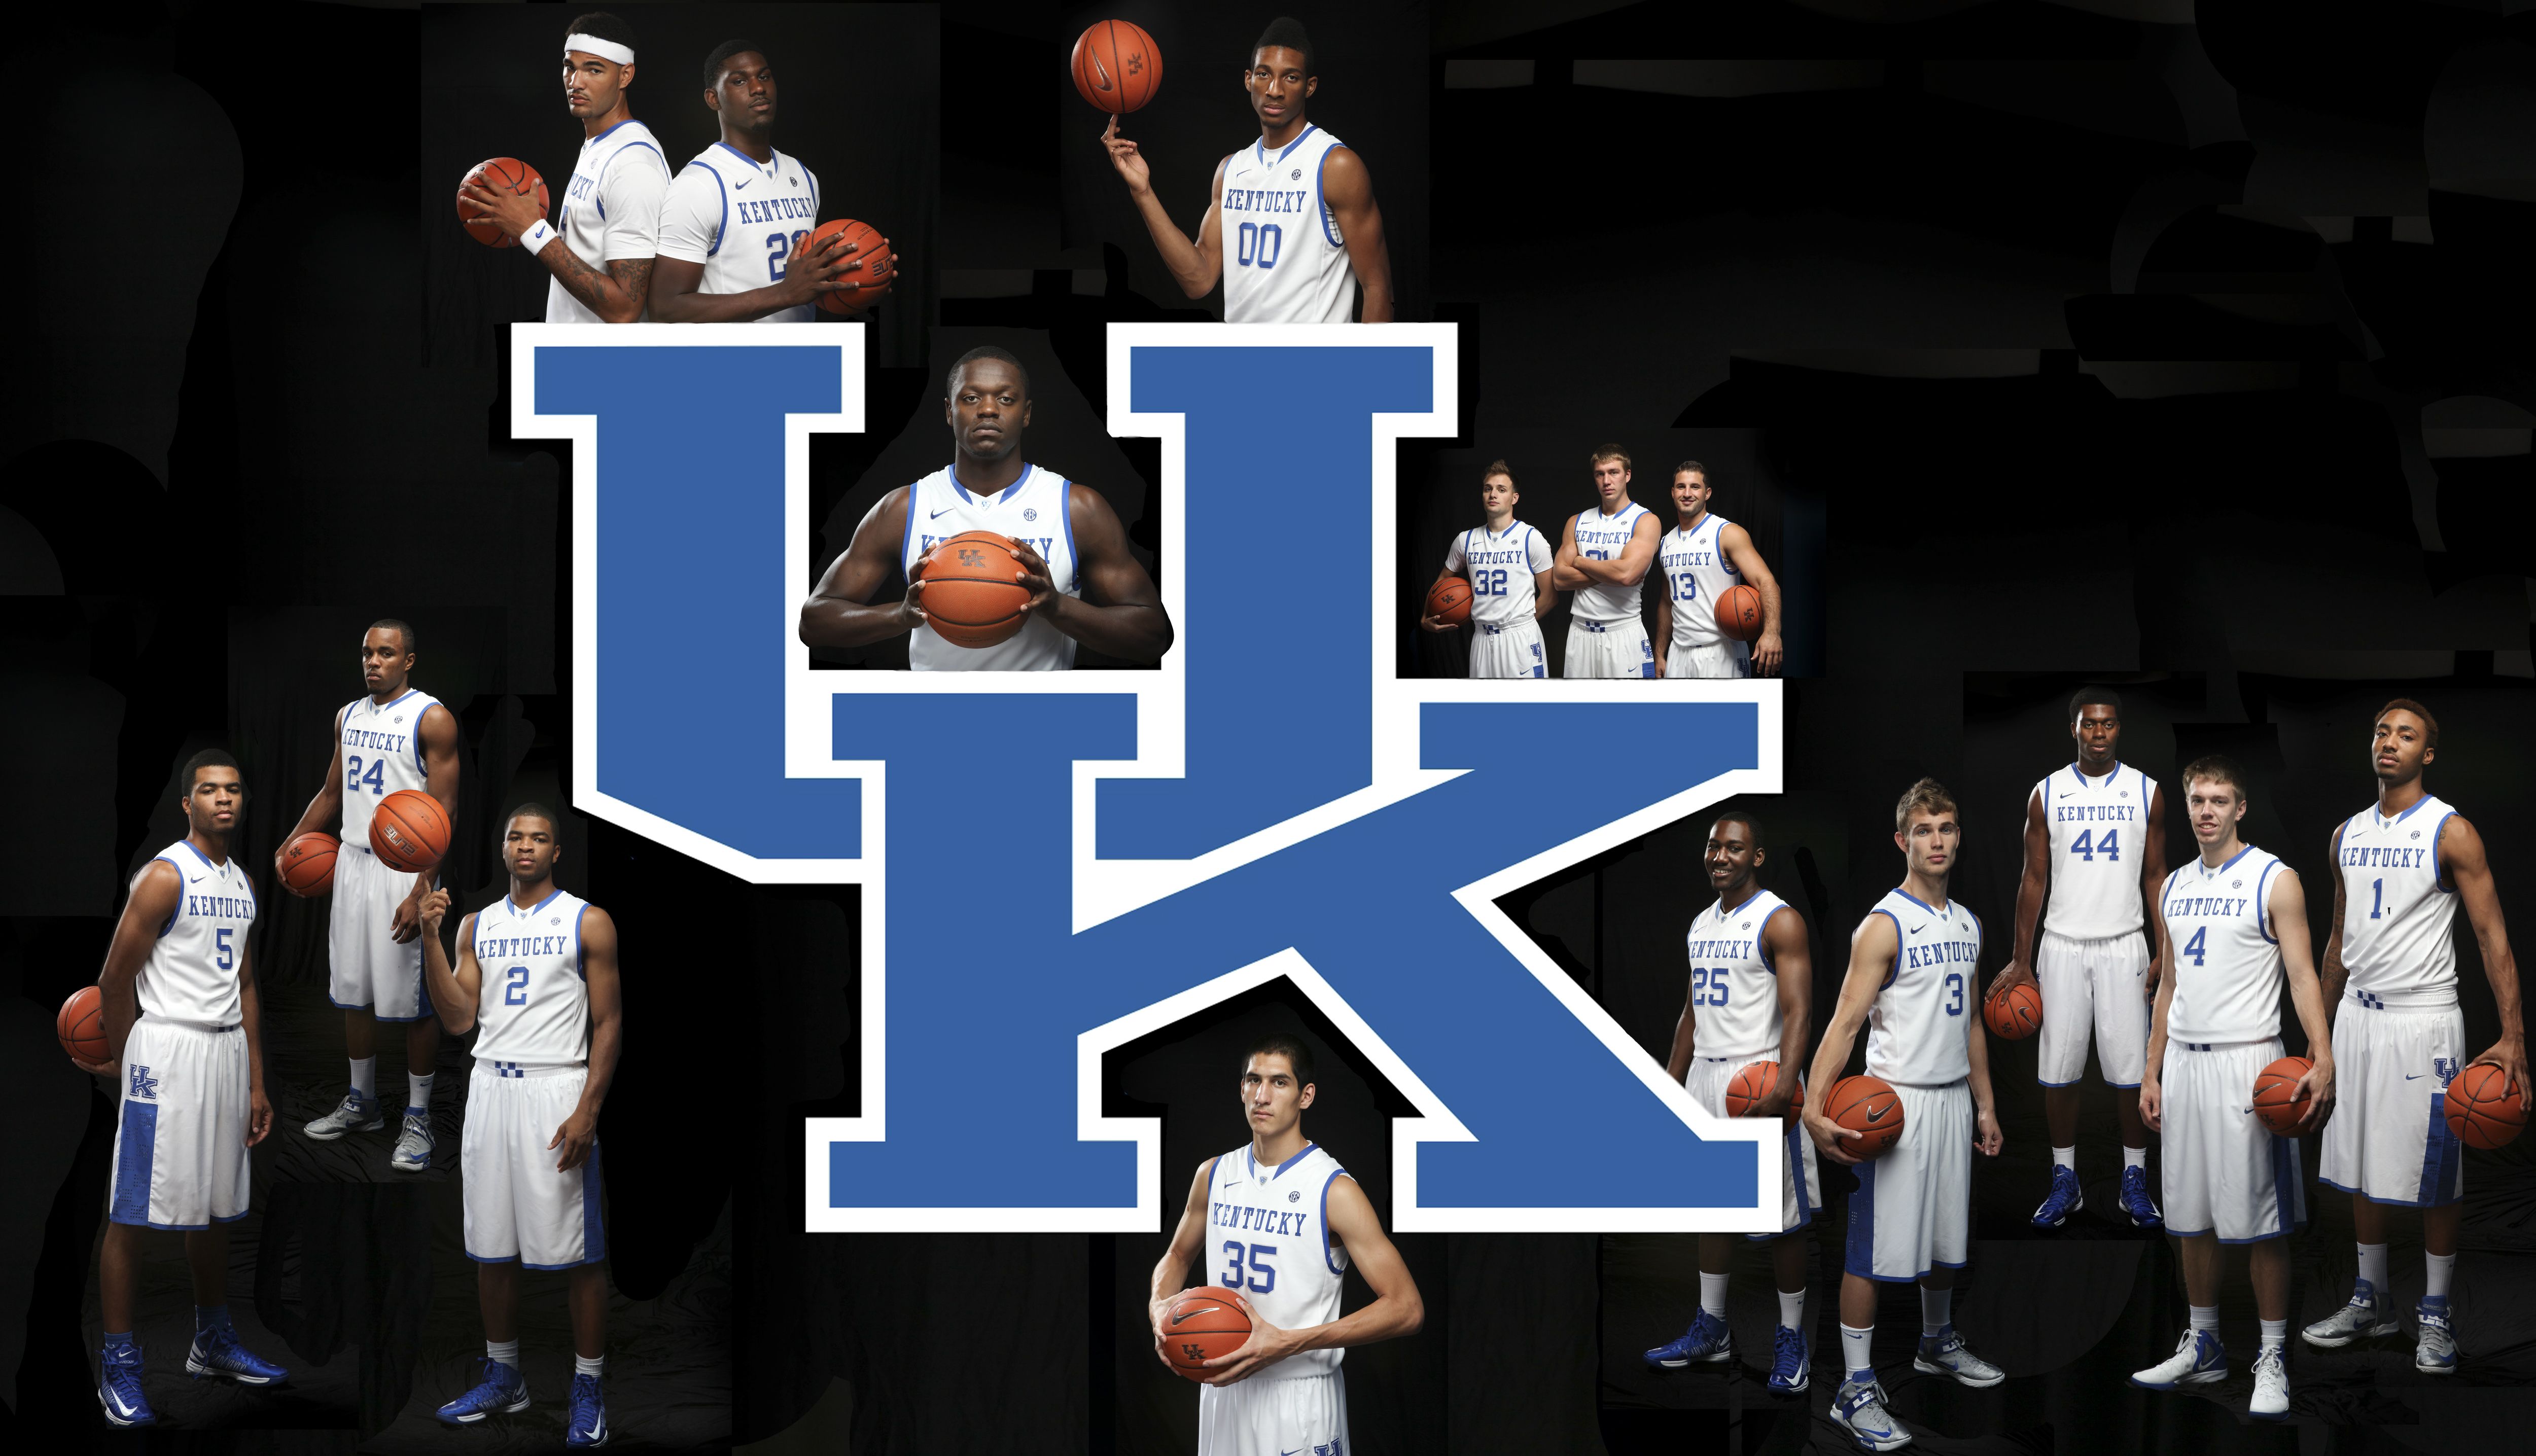 Photo New desktop wallpaper of your 2013 2014 Kentucky Wildcats